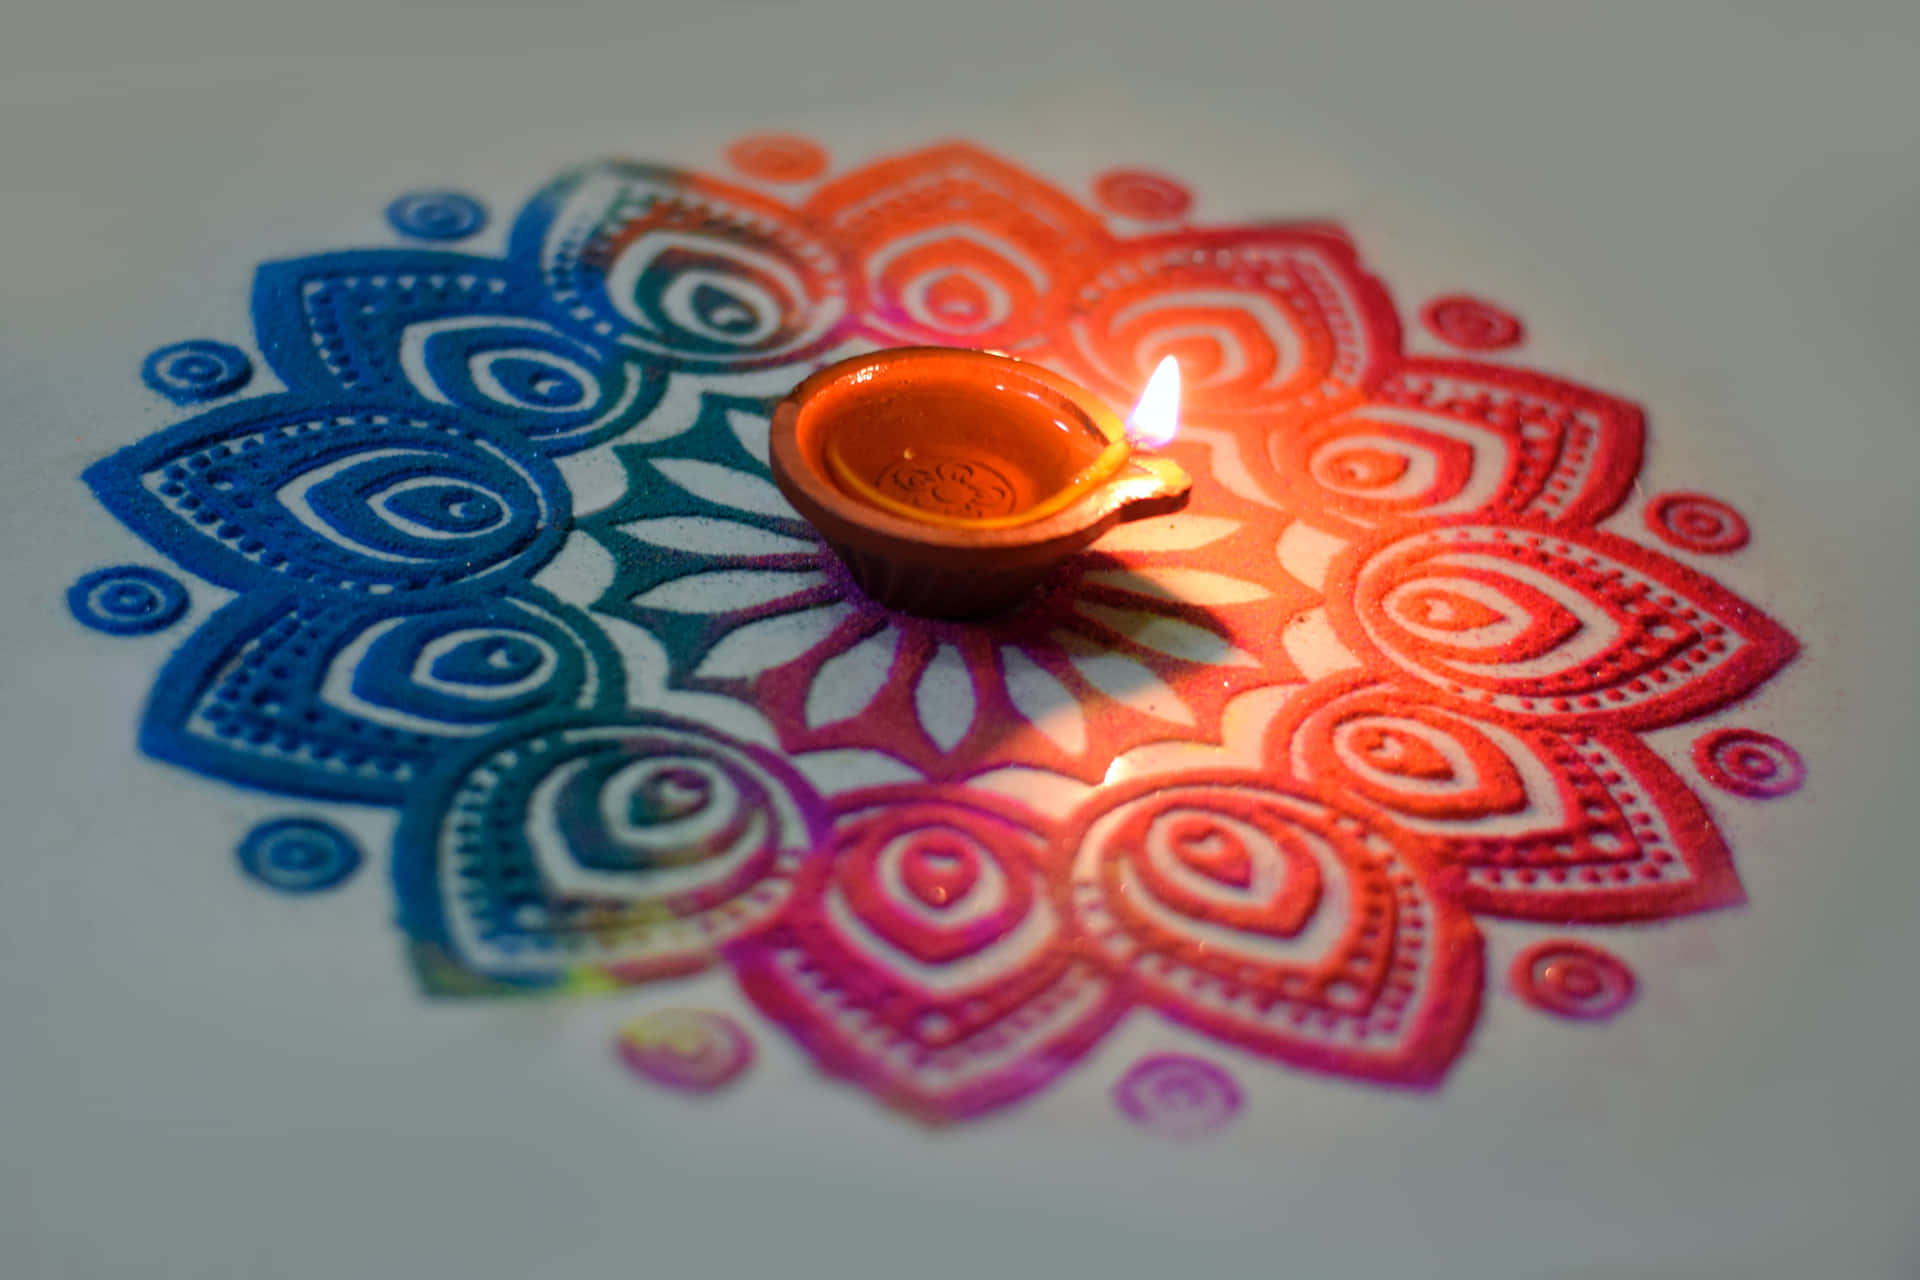 Diwali Festival of Lights Background